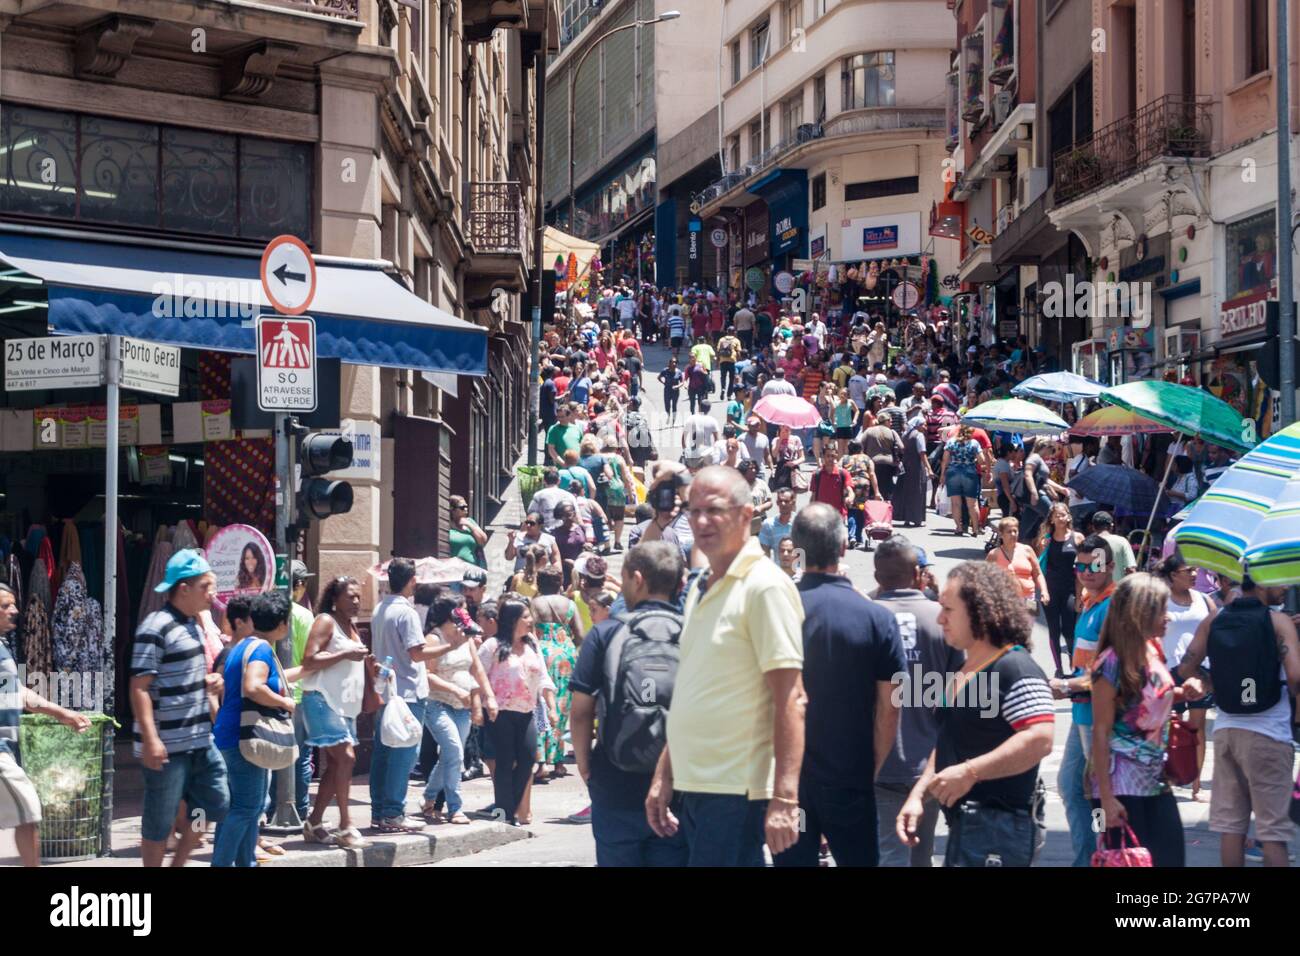 SAO PAULO, BRASIL - 3 DE FEBRERO de 2015: Calle concurrida en el centro de Sao Paulo, Brasil Foto de stock